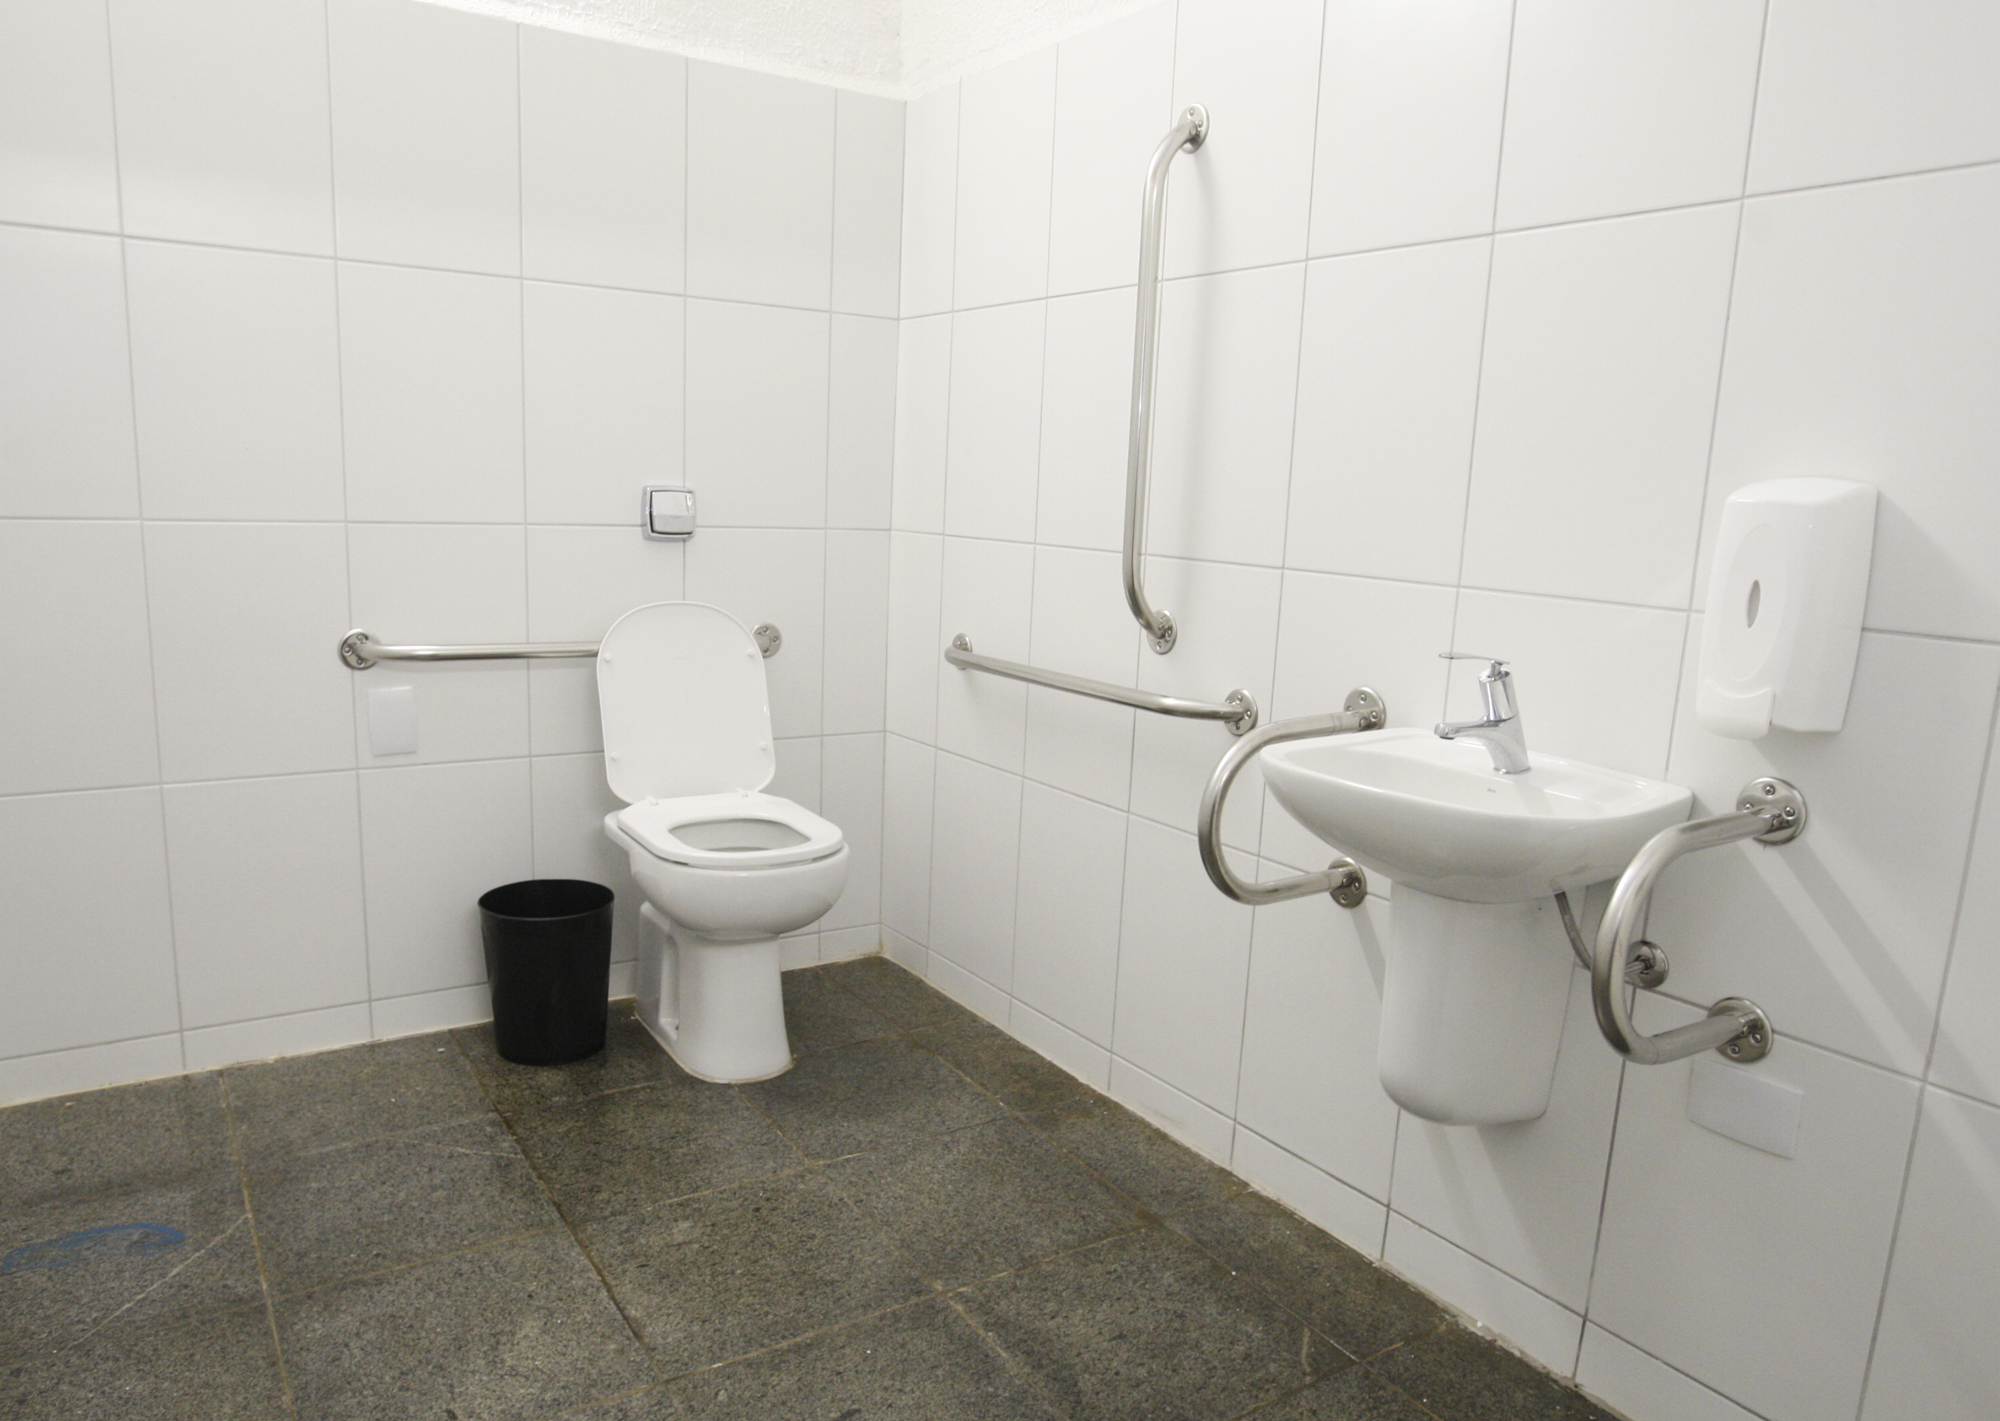 921899-Entrega da reforma dos banheiros públicos do Parque Ibirapuera
